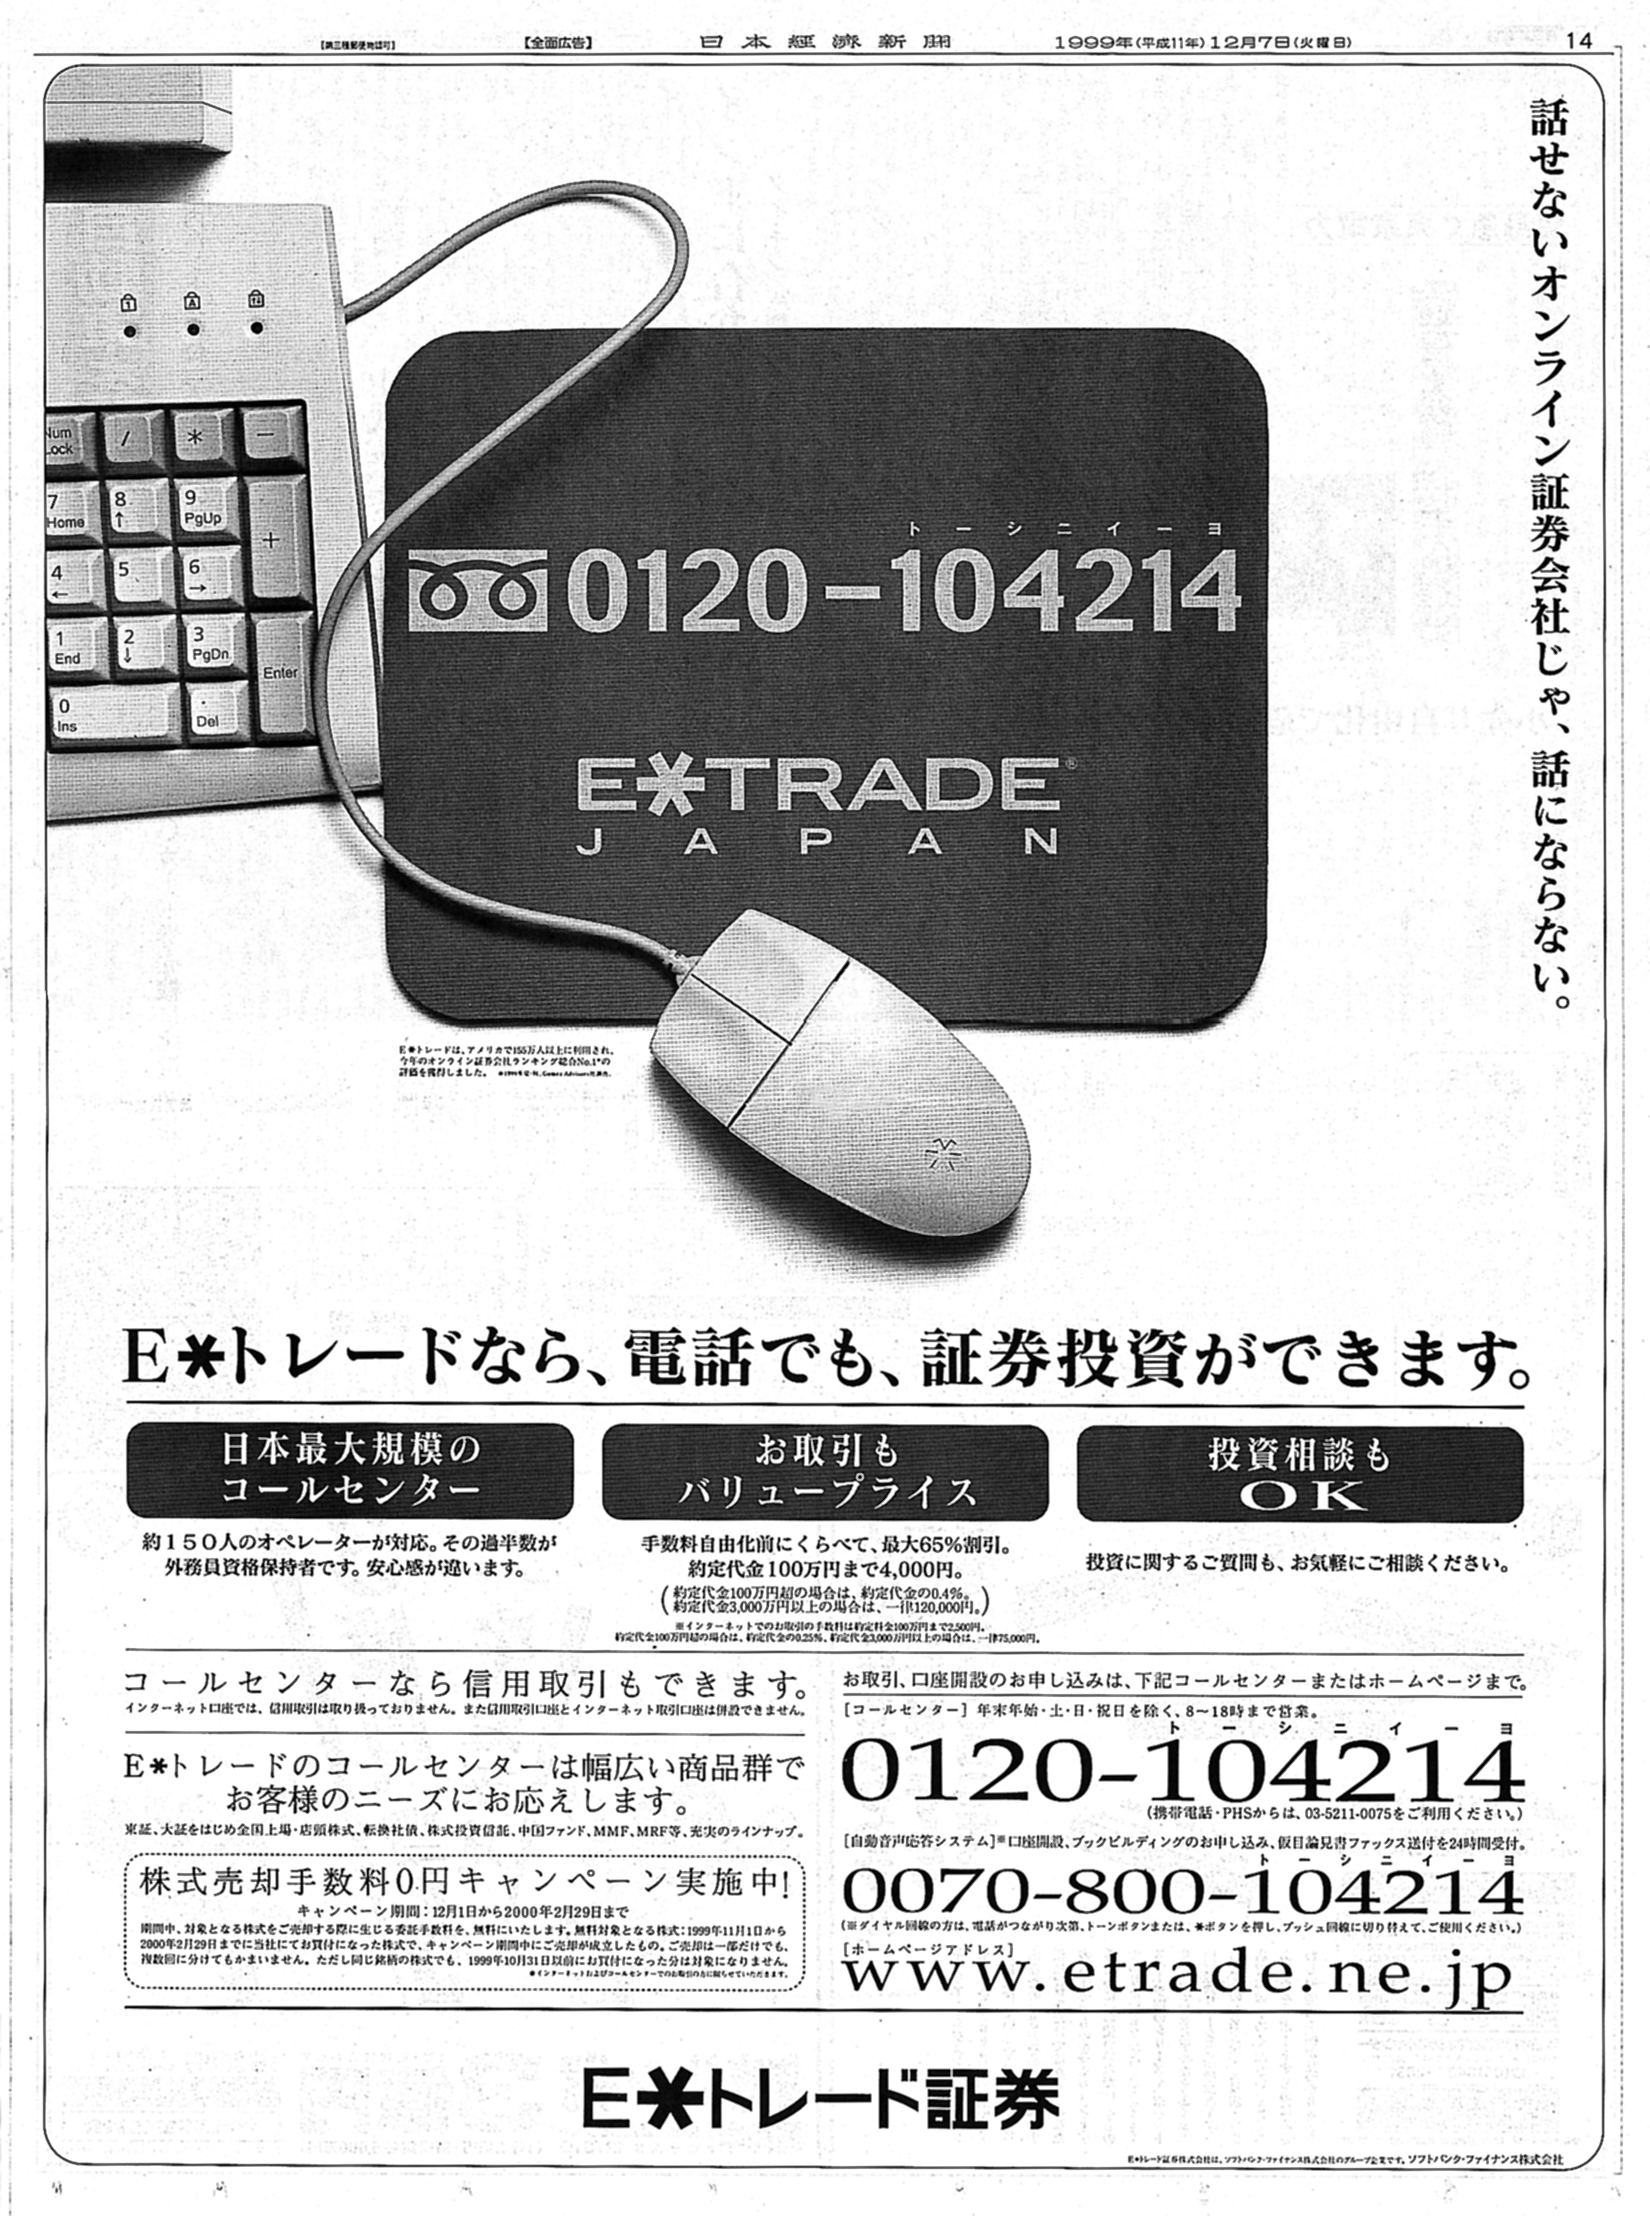 (資料1)コールセンターの告知を目的とした新聞広告。電話でも取り引きできることが強調されている（資料出所：1999年12月7日付日本経済新聞）